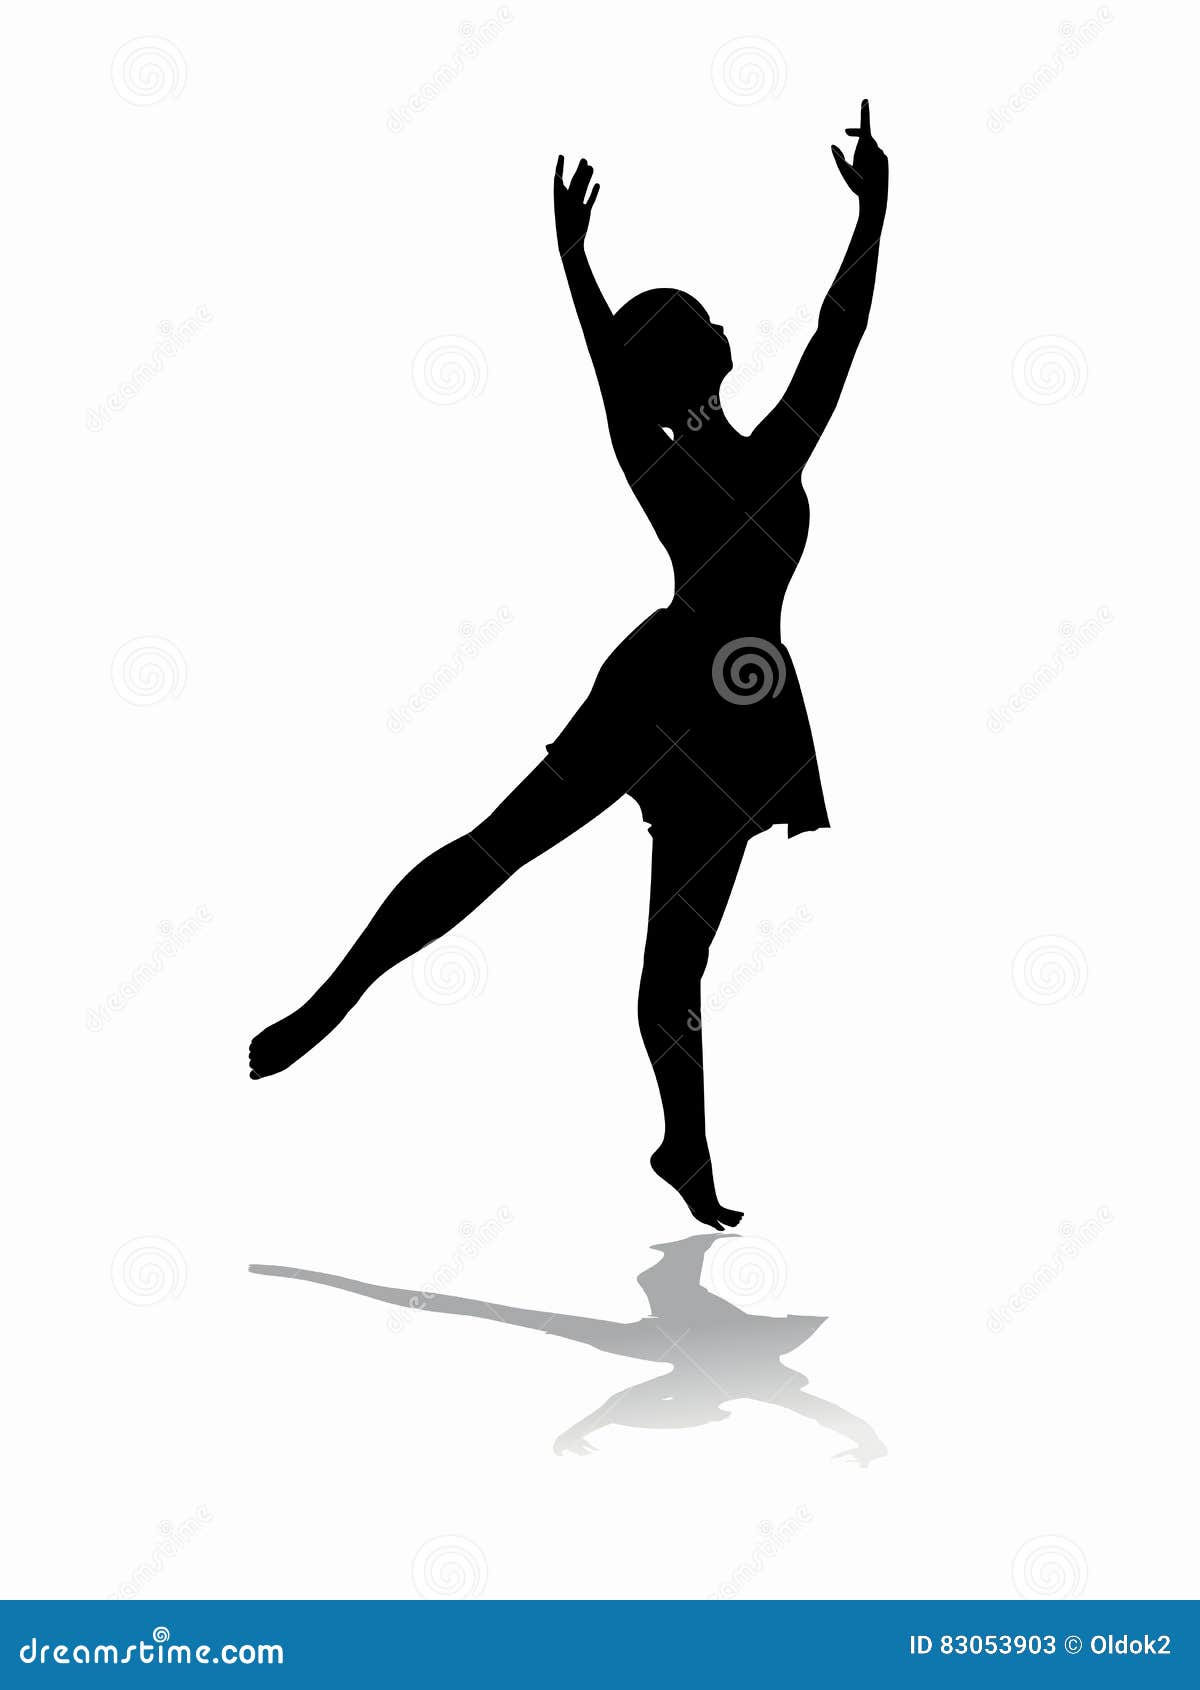 Χορευτής γυναικών, διανυσματική απεικόνιση. Χορευτής γυναικών σκιαγραφιών μαύρο σκίτσο, άσπρο υπόβαθρο